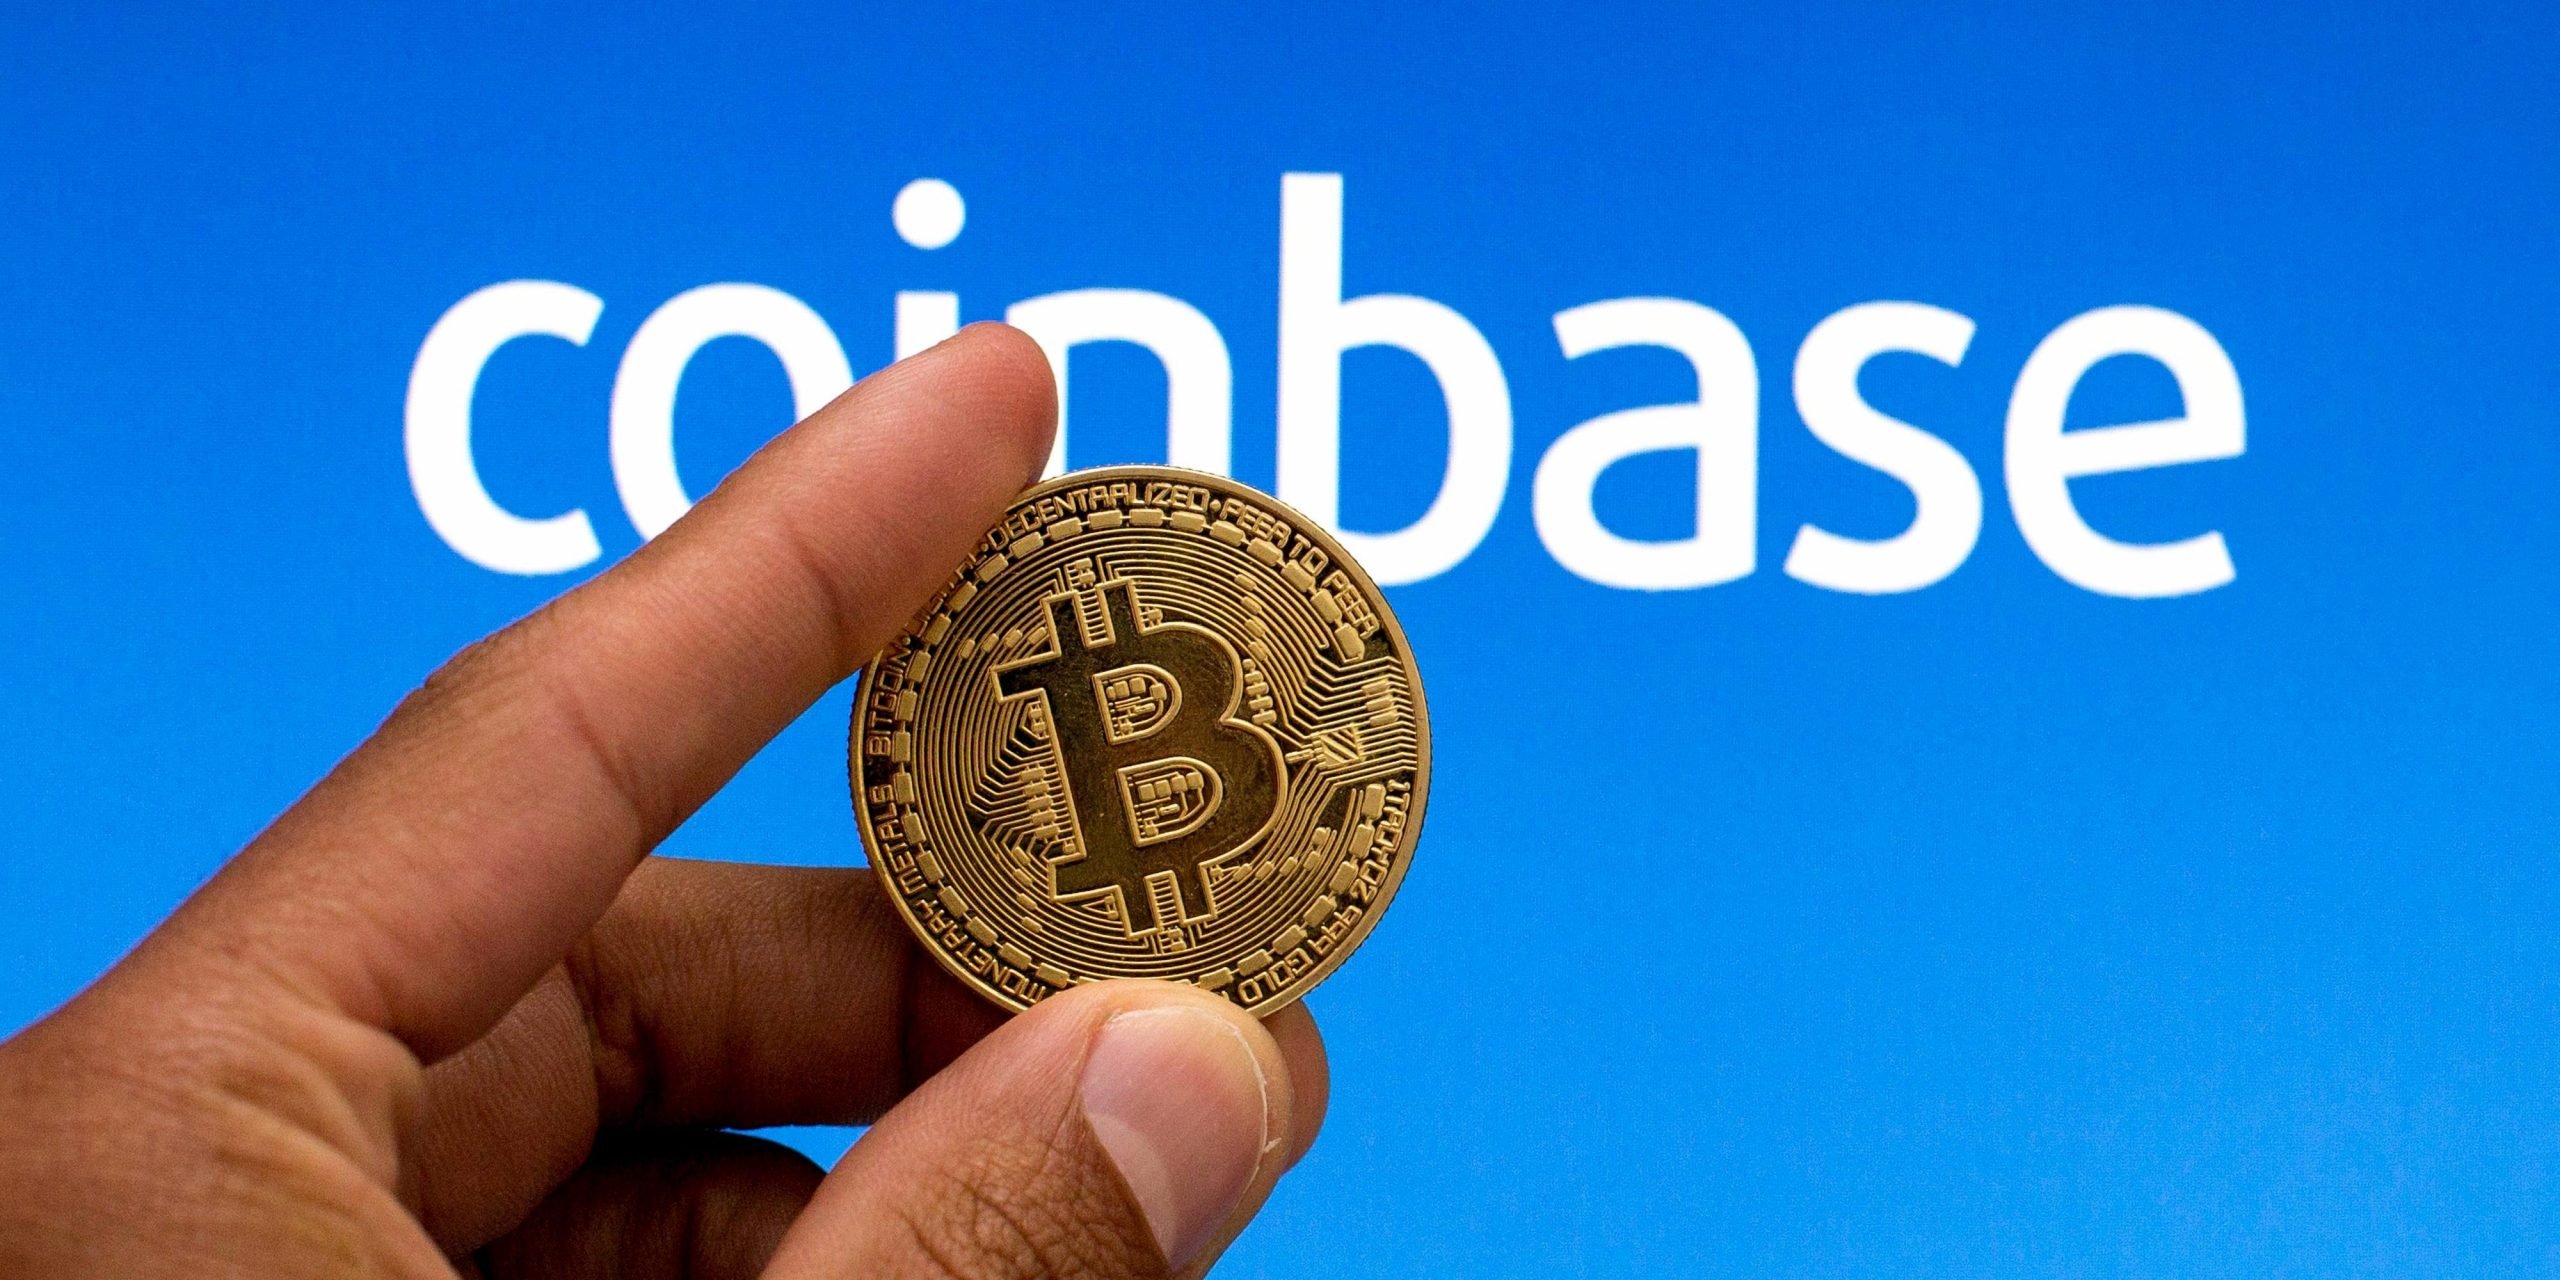 Coinbase and Bitcoin